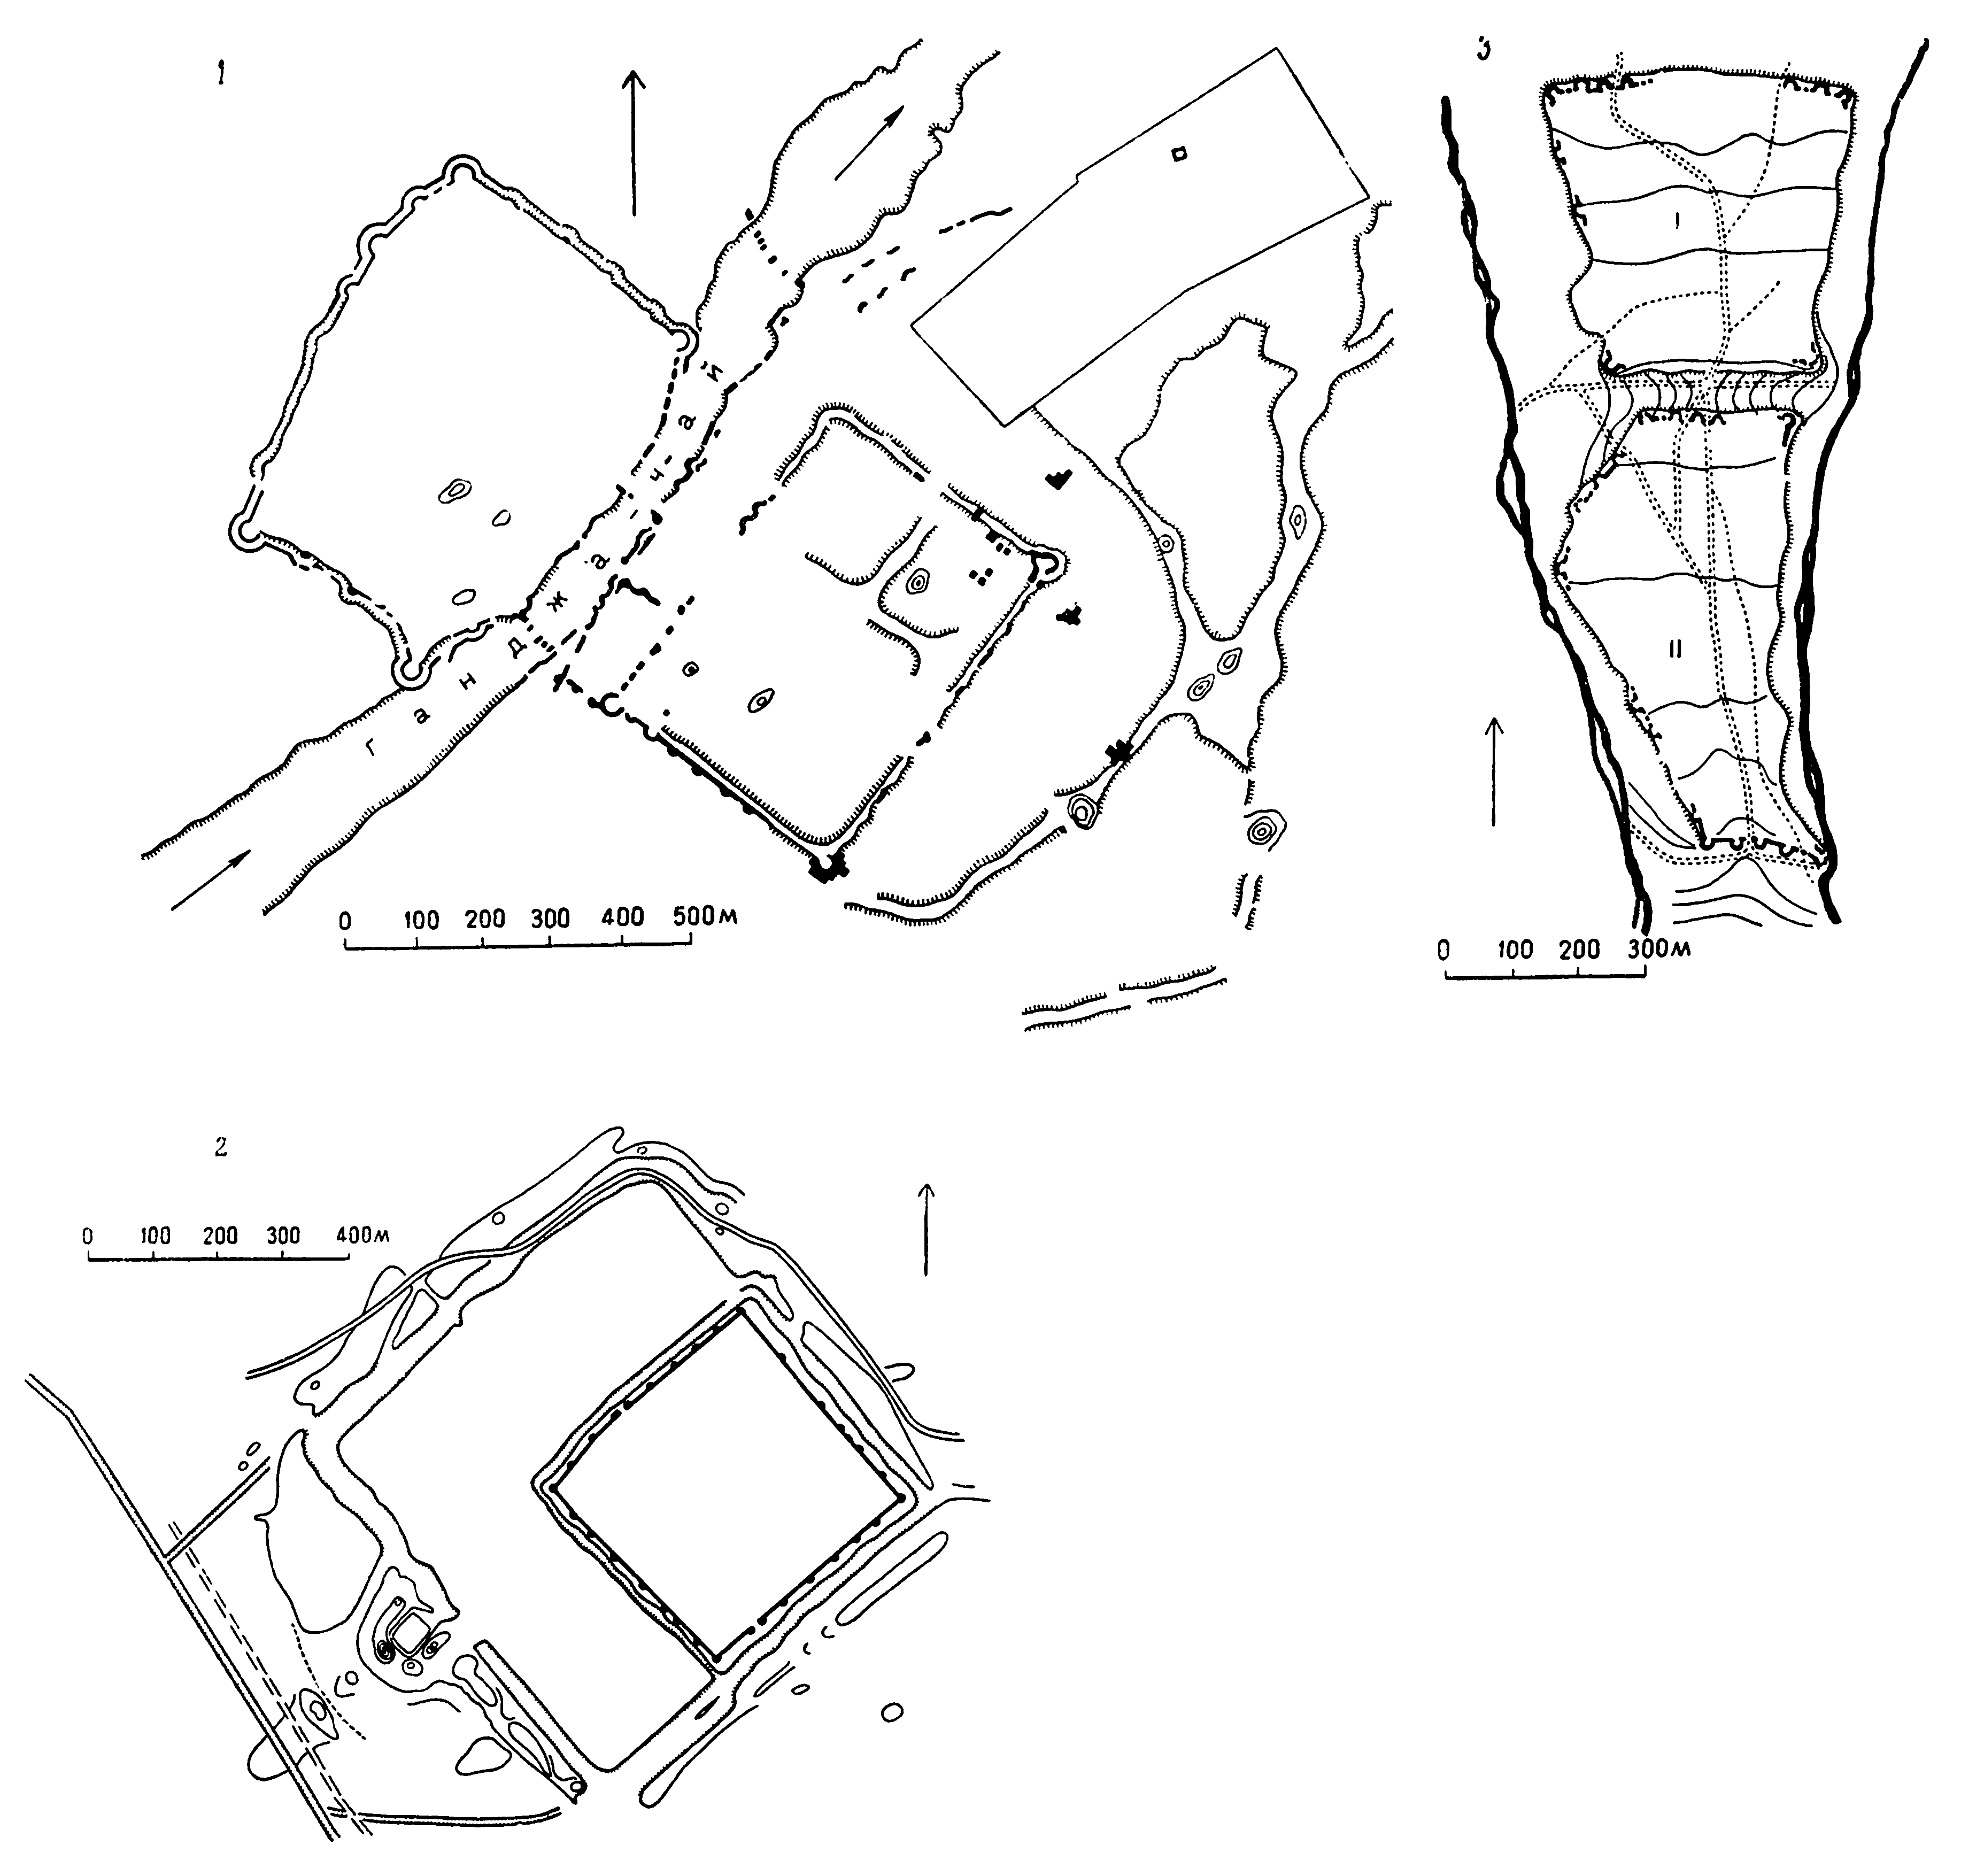 2. Планы средневековых городищ 1 — Старой Ганджи; 2 — Орен-кала (Байлакан); 3 — Кабалы; I — Сельбир; II — Гяур-кала